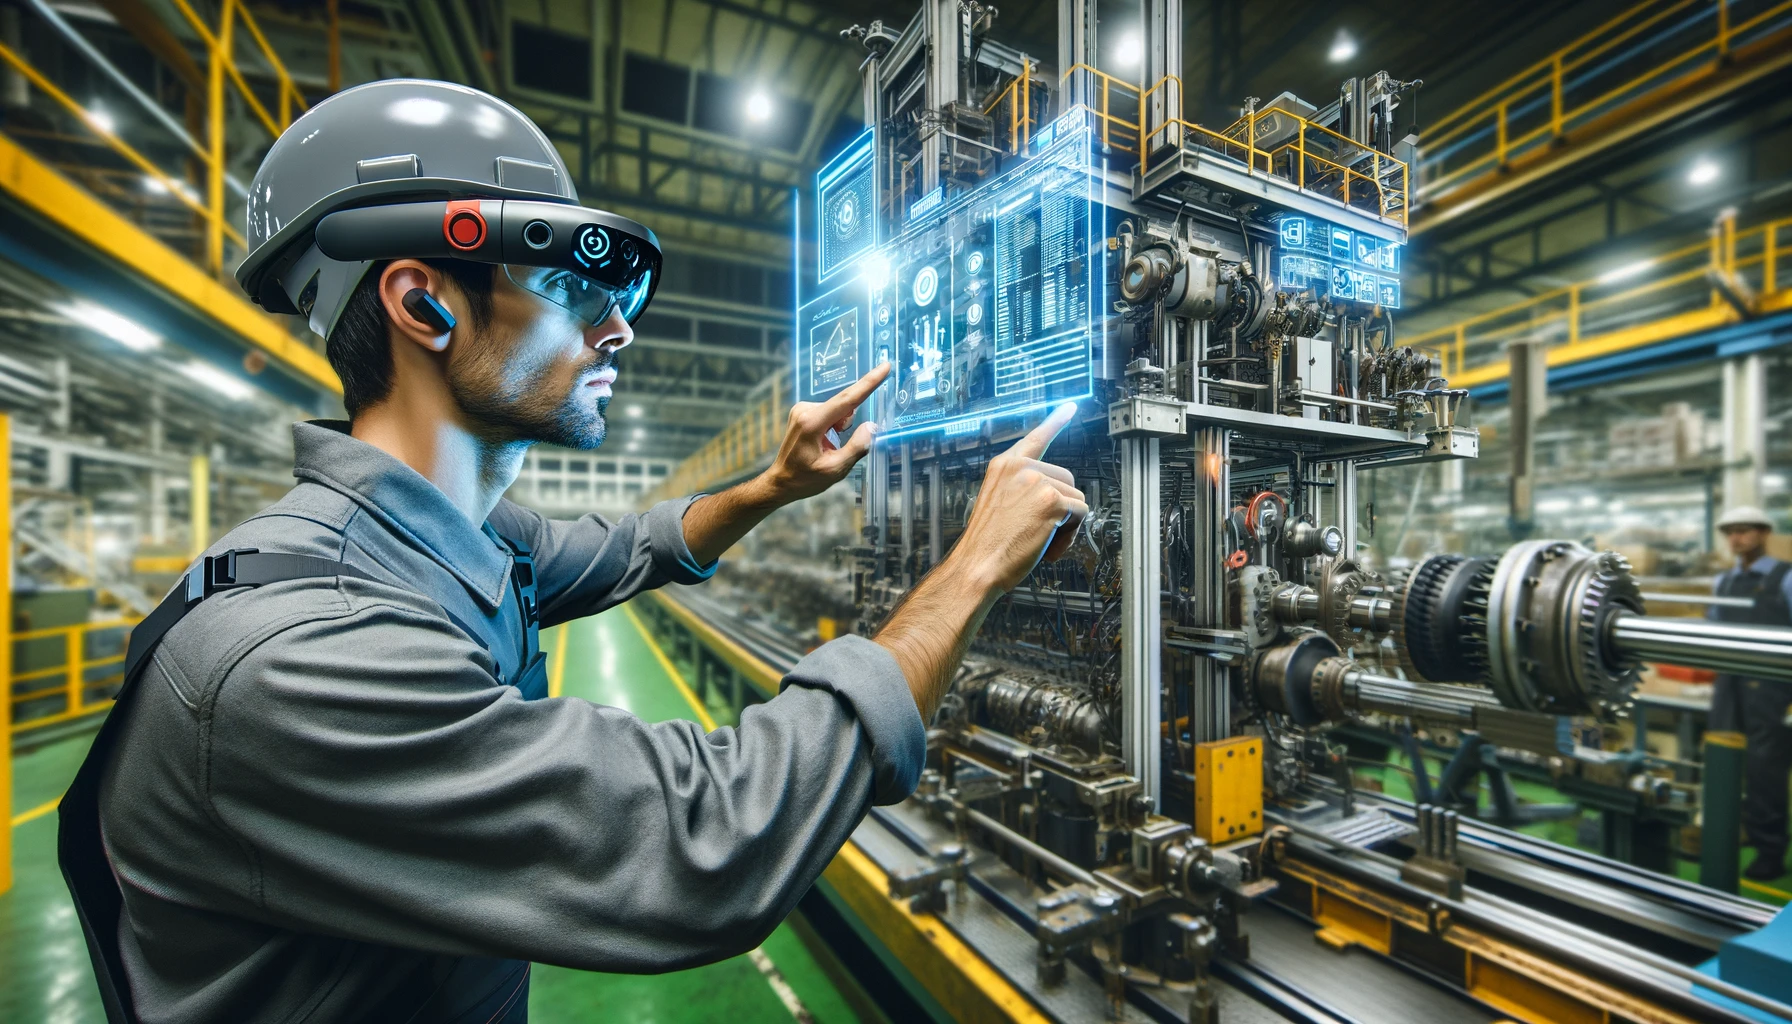 Un trabajador de fábrica utilizando gafas de realidad aumentada para recibir instrucciones operacionales en tiempo real mientras trabaja en una línea de montaje. La imagen muestra al trabajador junto a maquinaria compleja, con datos técnicos y instrucciones de montaje superpuestos.